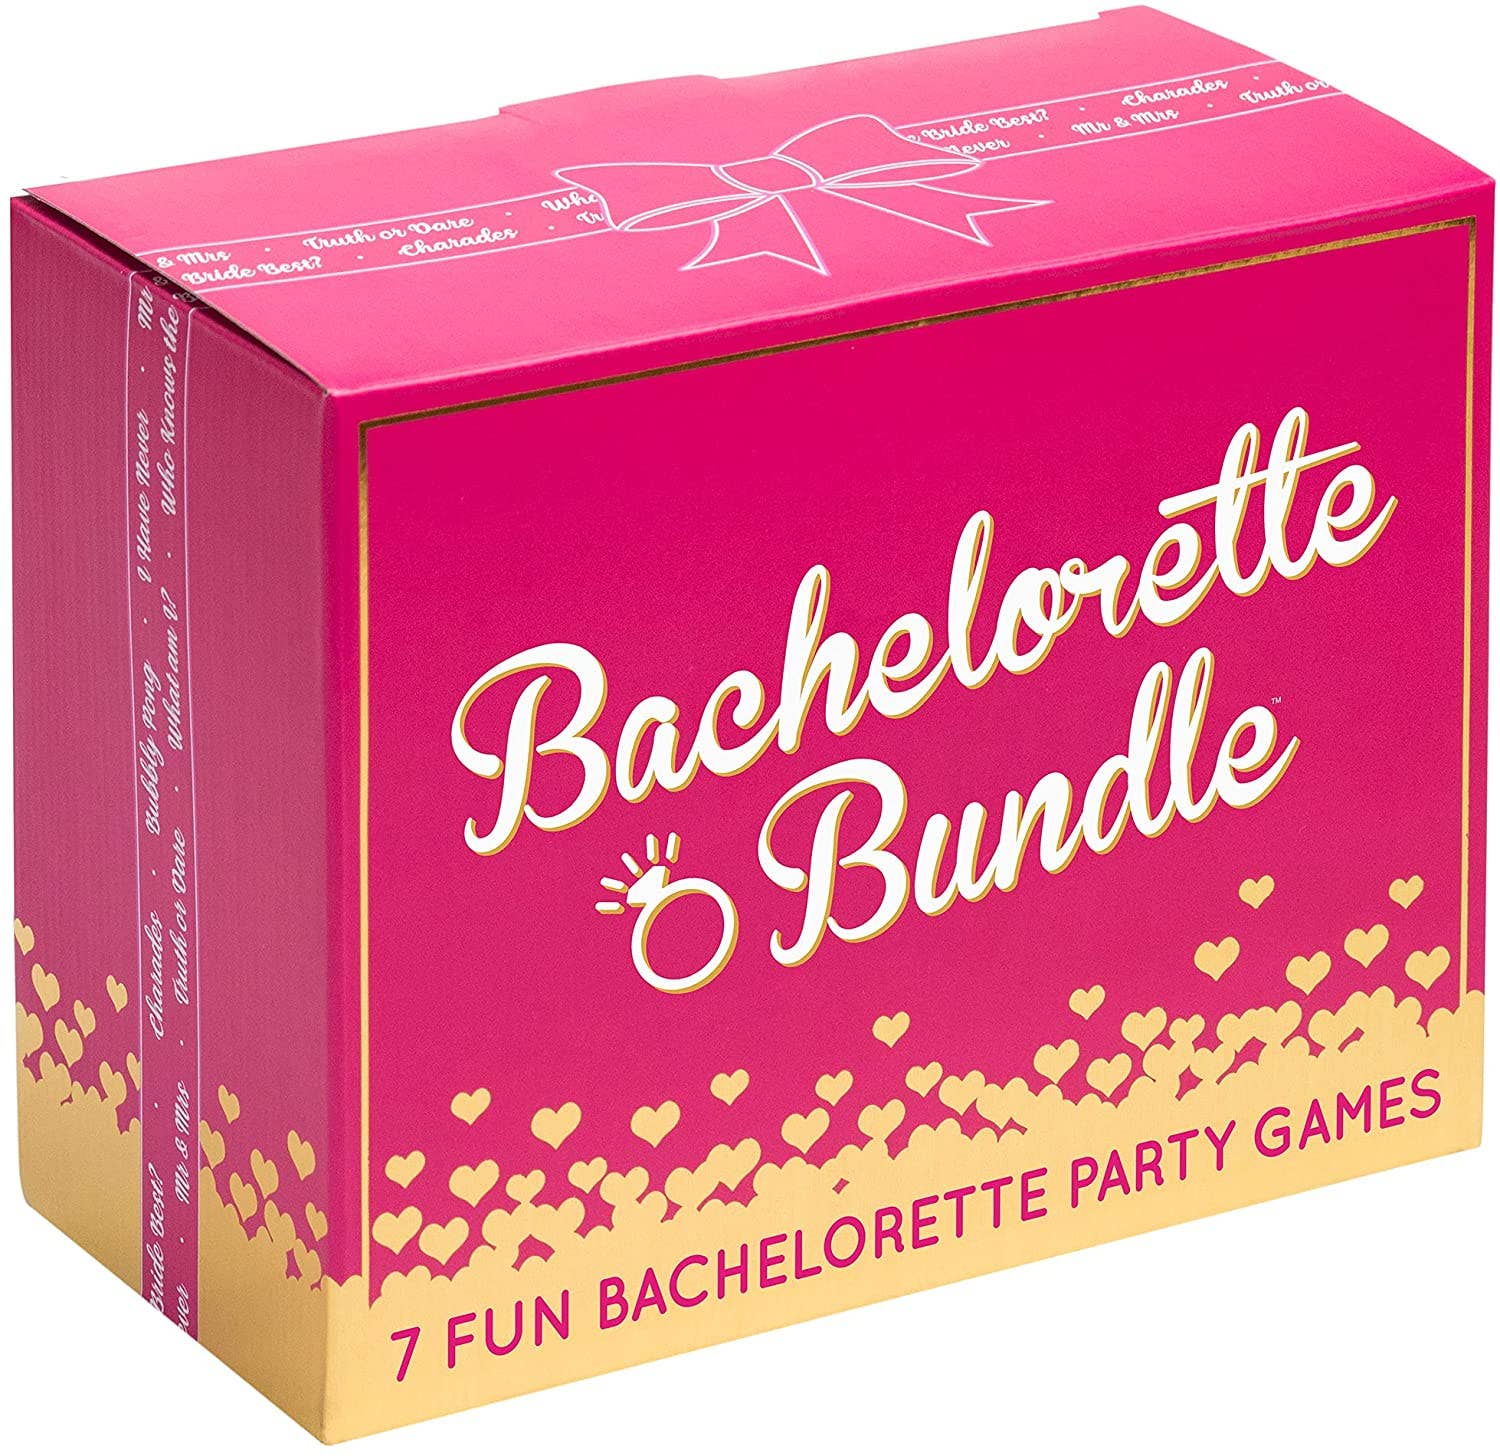 SALE! Bachelorette Bundle - 7 Fun Bachelorette Party Games